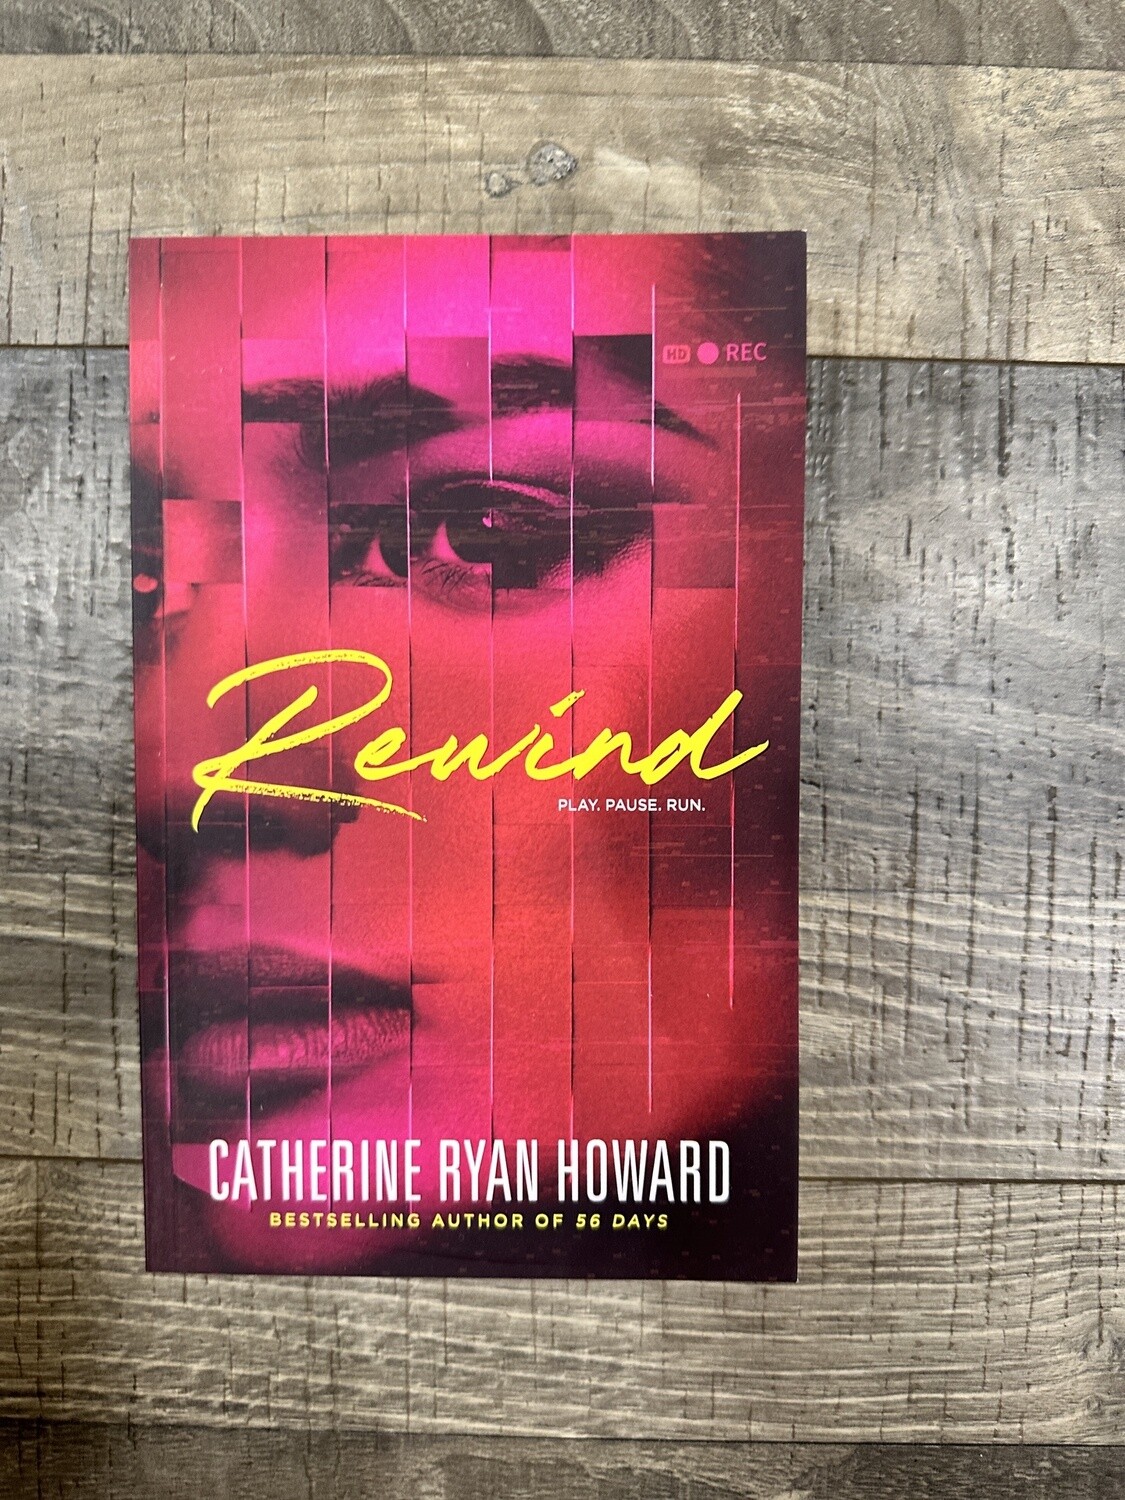 Ryan Howard, Catherine-Rewind